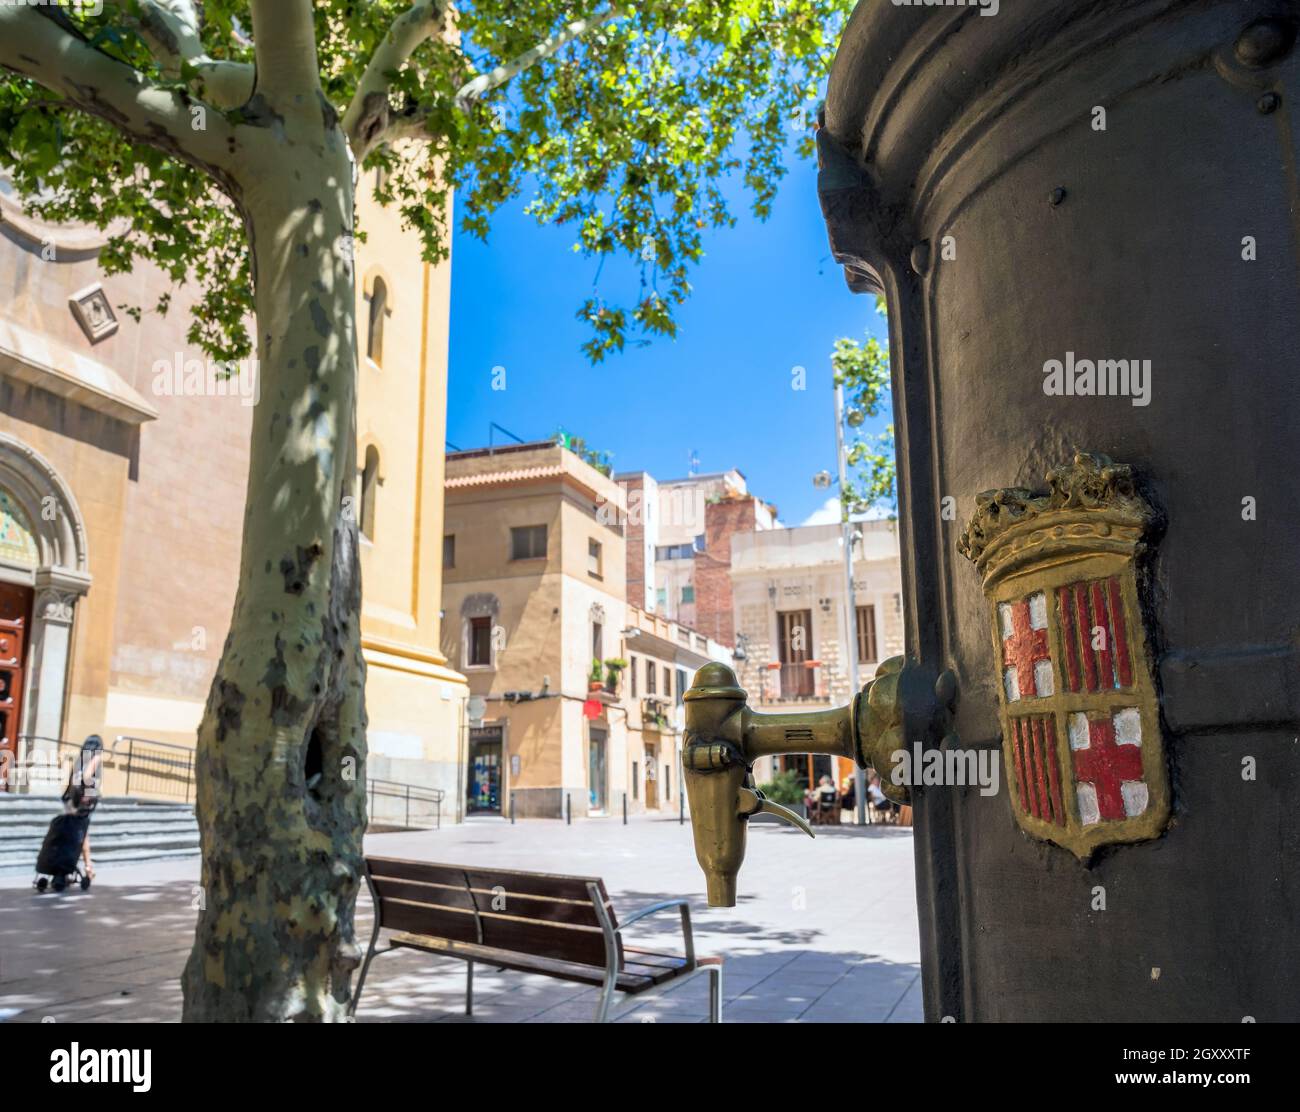 Barcelona, Spanien - 5. Juli 2017: Detail eines Trinkwasserbrunnens mit Stadtabzeichen in Les Corts, Barcelona, Spanien. Stockfoto